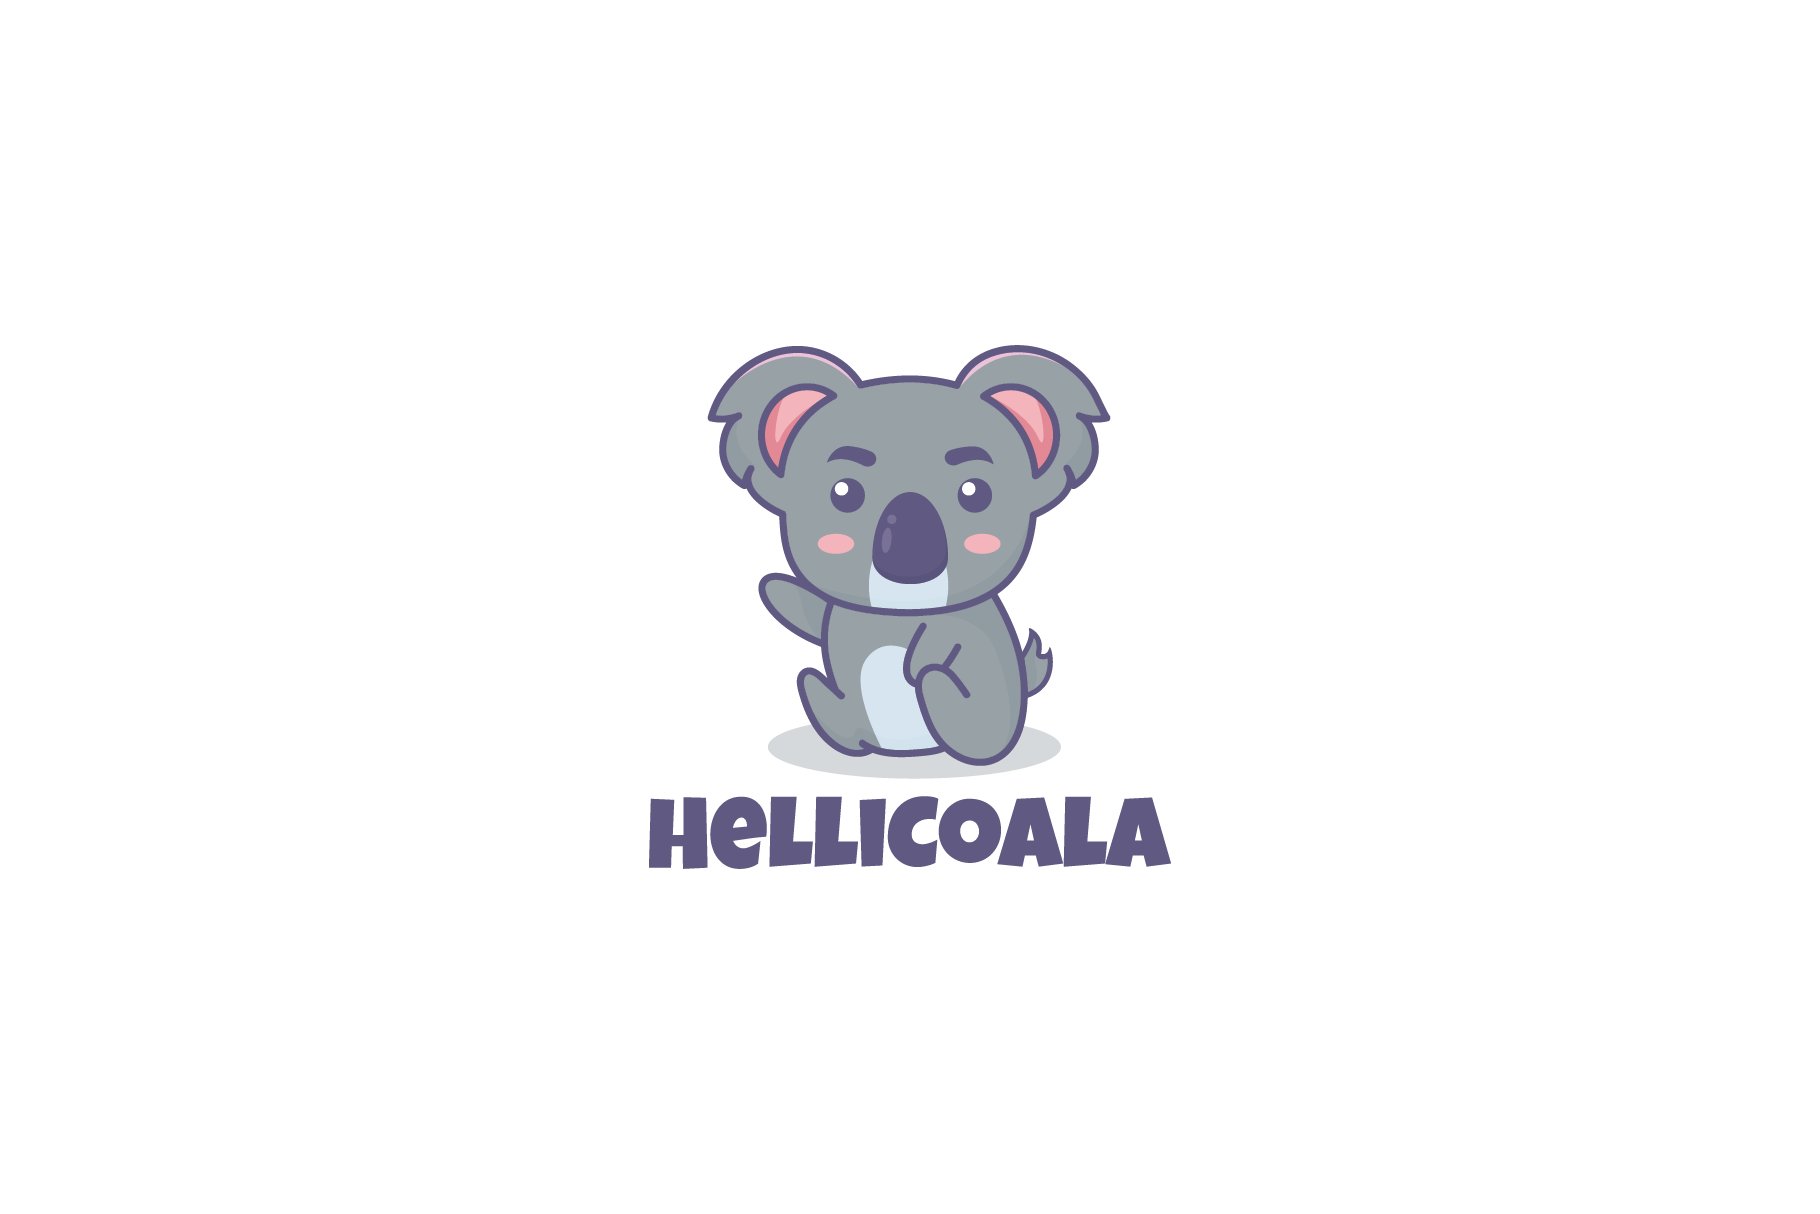 HelliKoala Logo Template cover image.